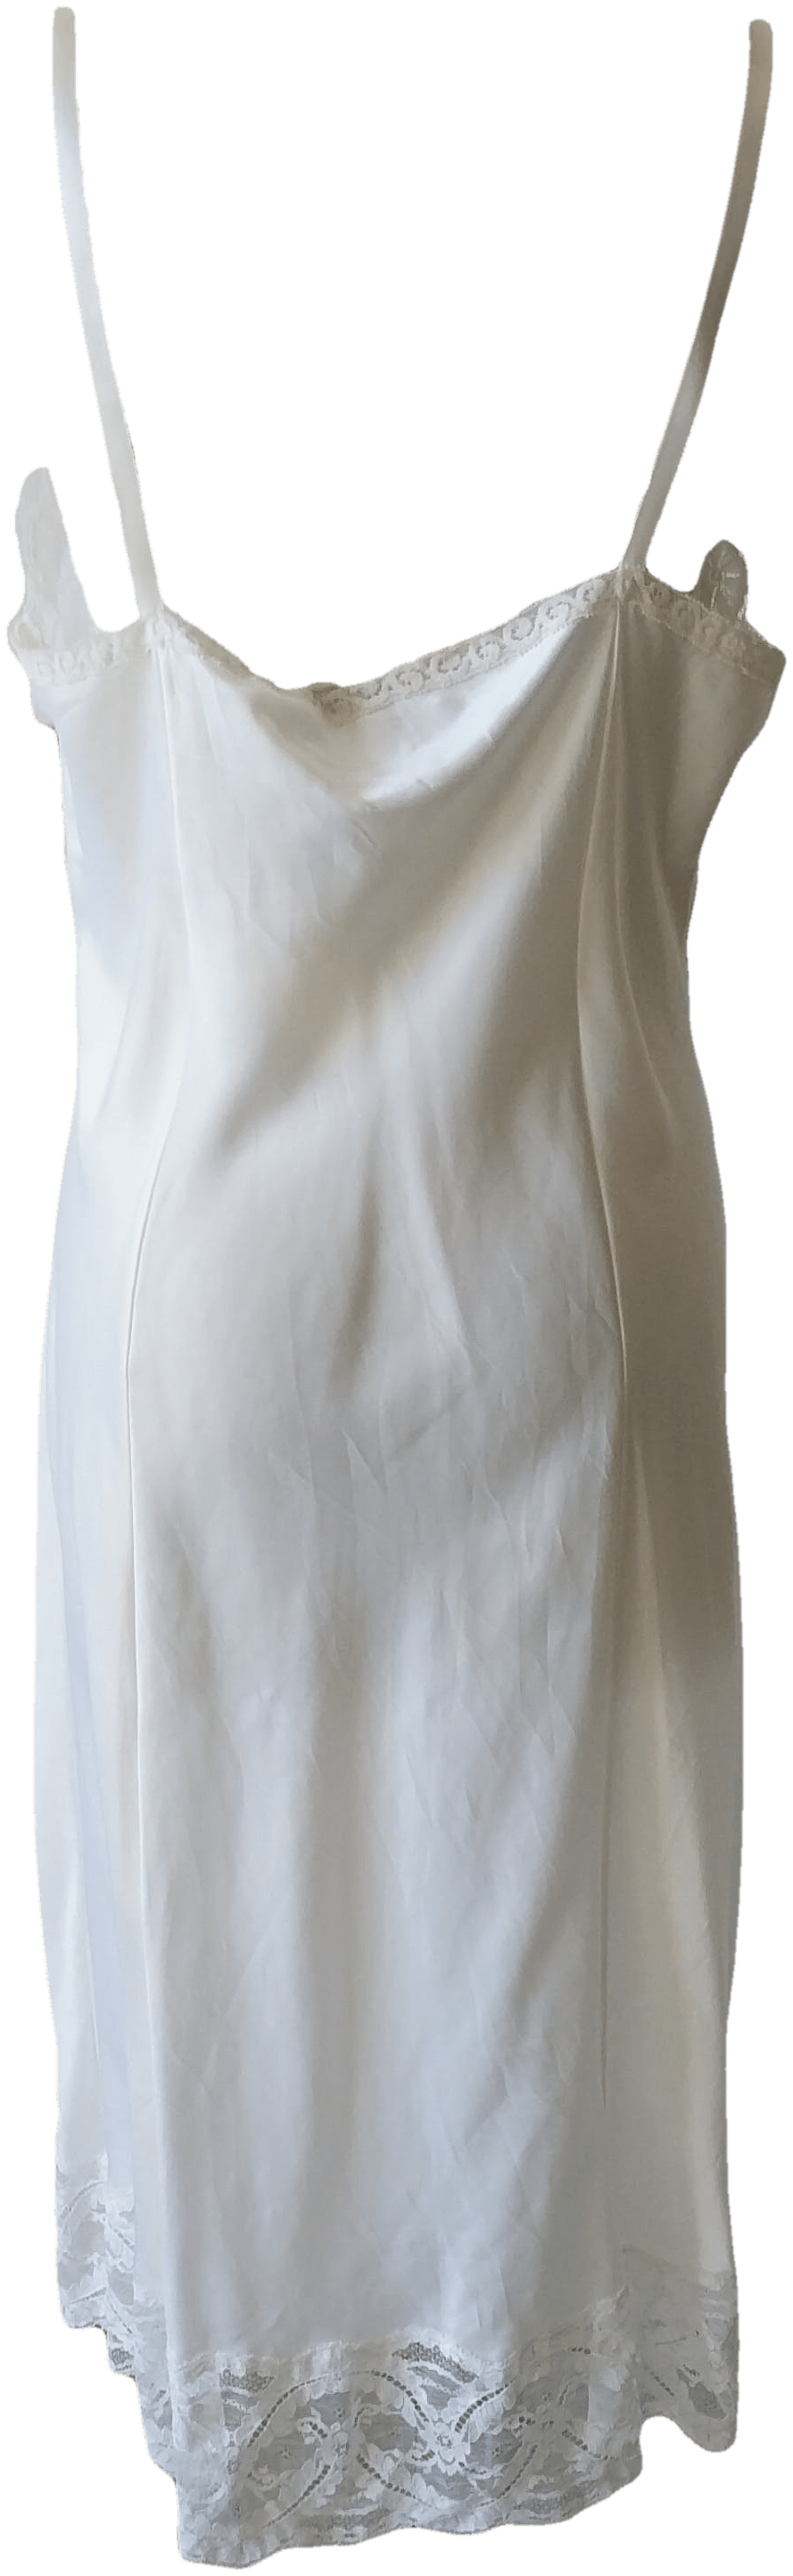 Vintage White Nylon Nightdress | Shop THRILLING